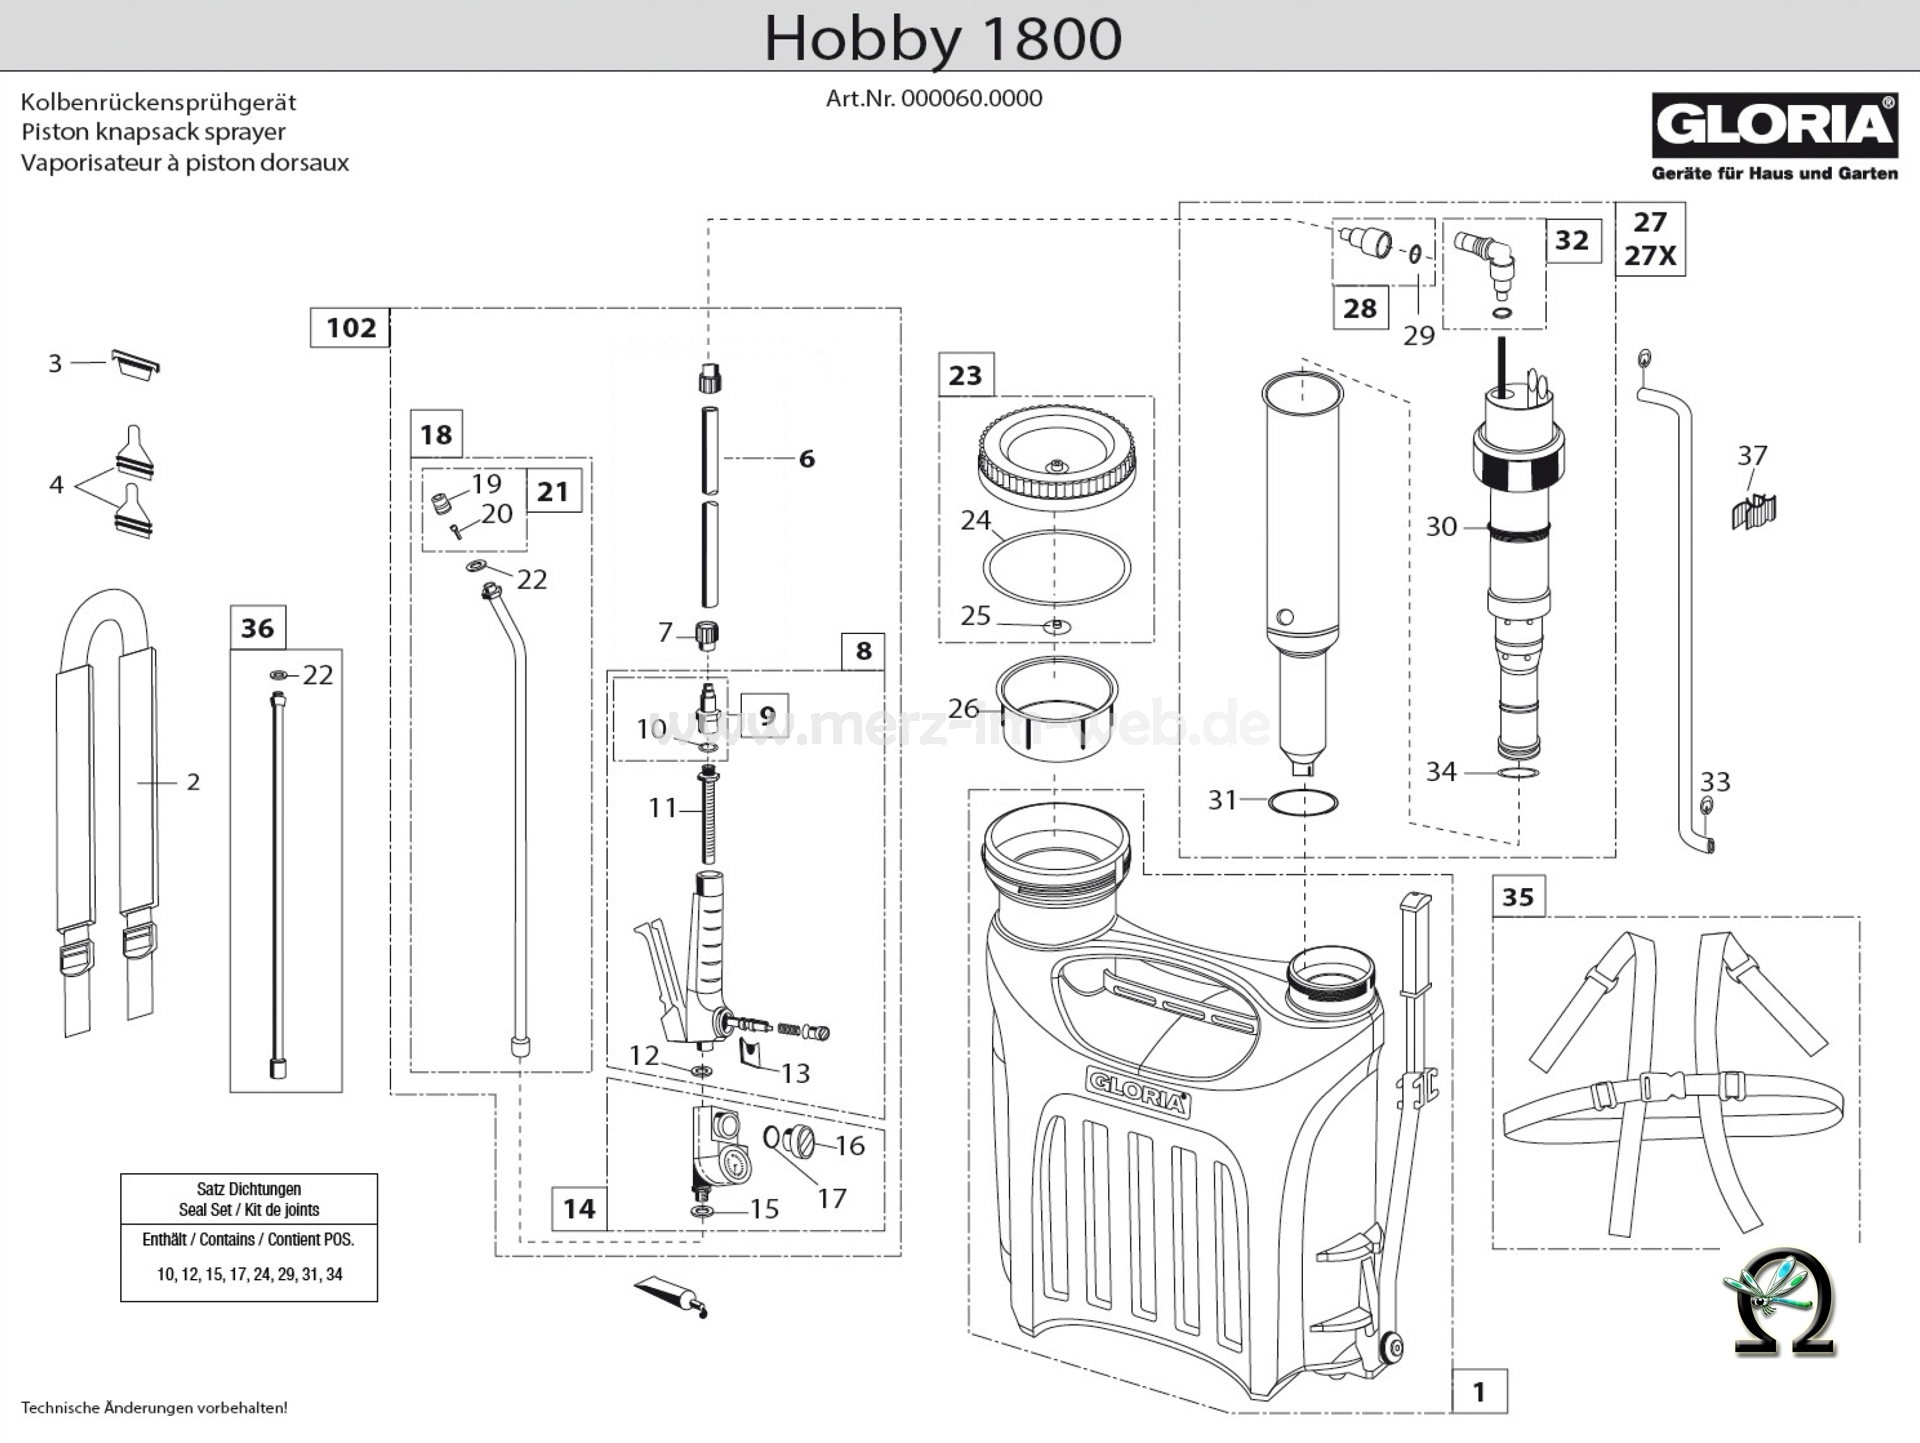 Gloria Kolbenrückensprühgerät Hobby 1800 Zeichnung der Einzelteile